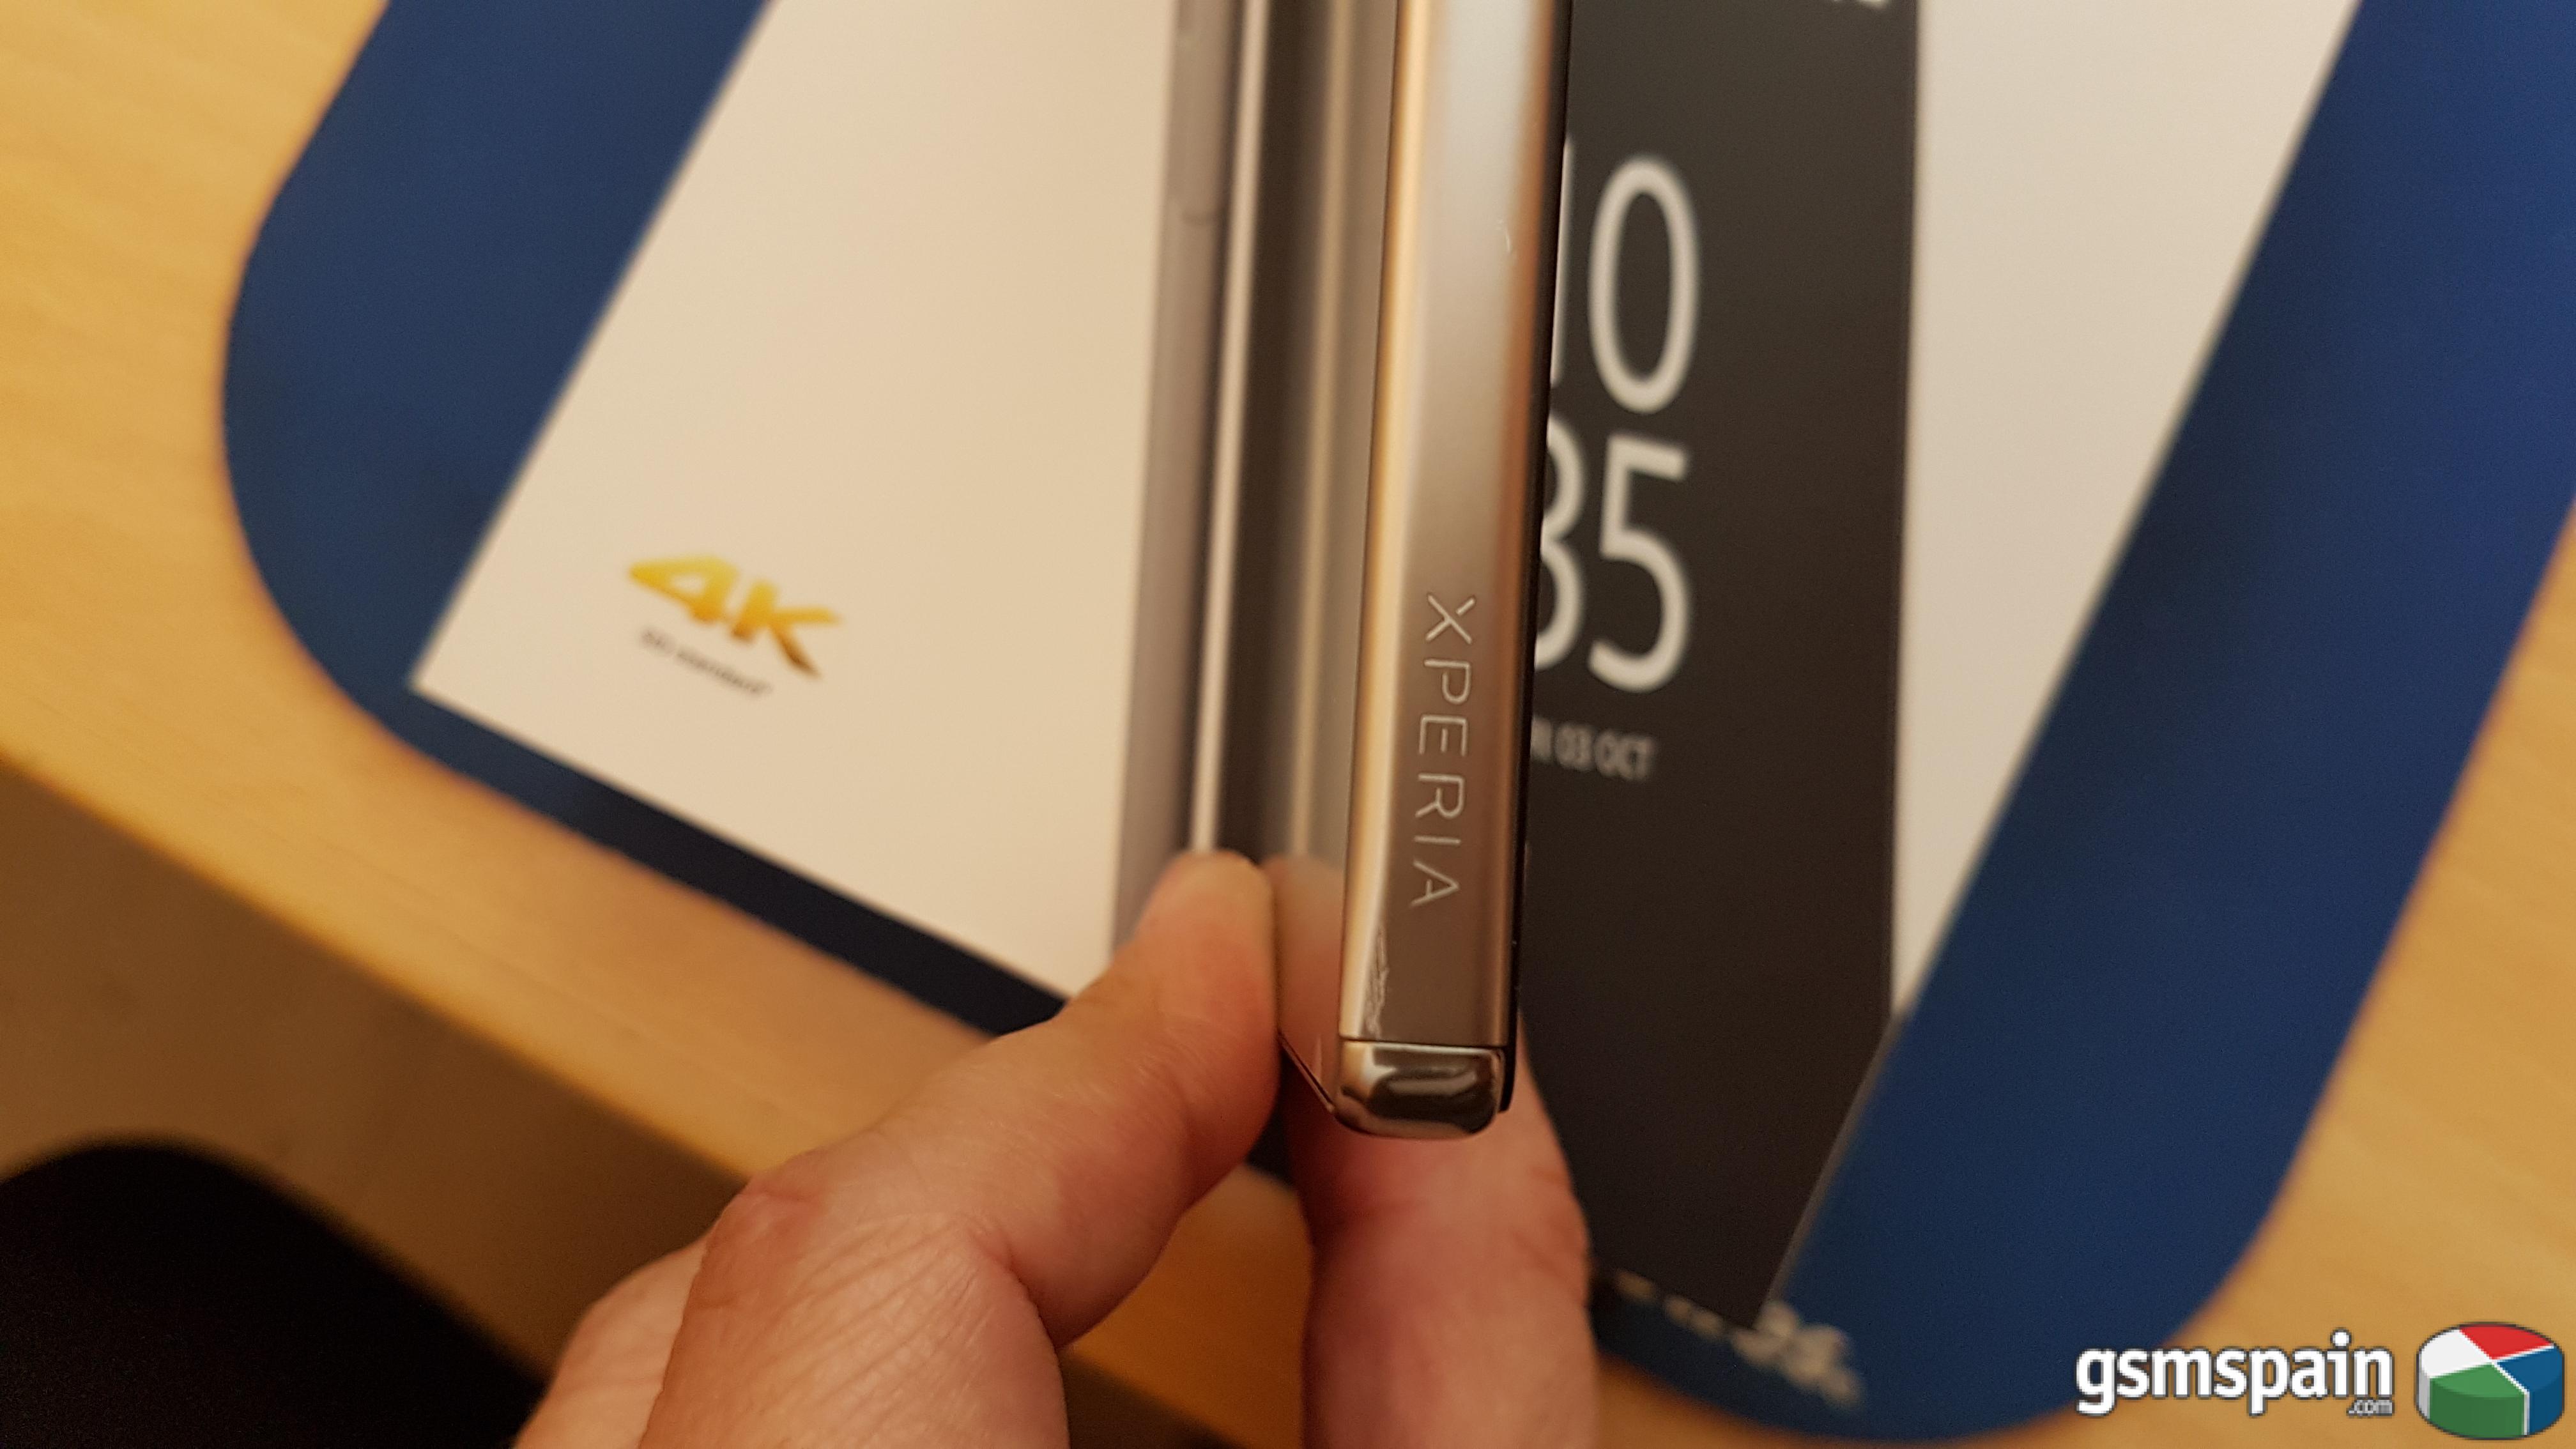 [VENDO] Sony Xperia Z5 Premium Chrome casi nuevo